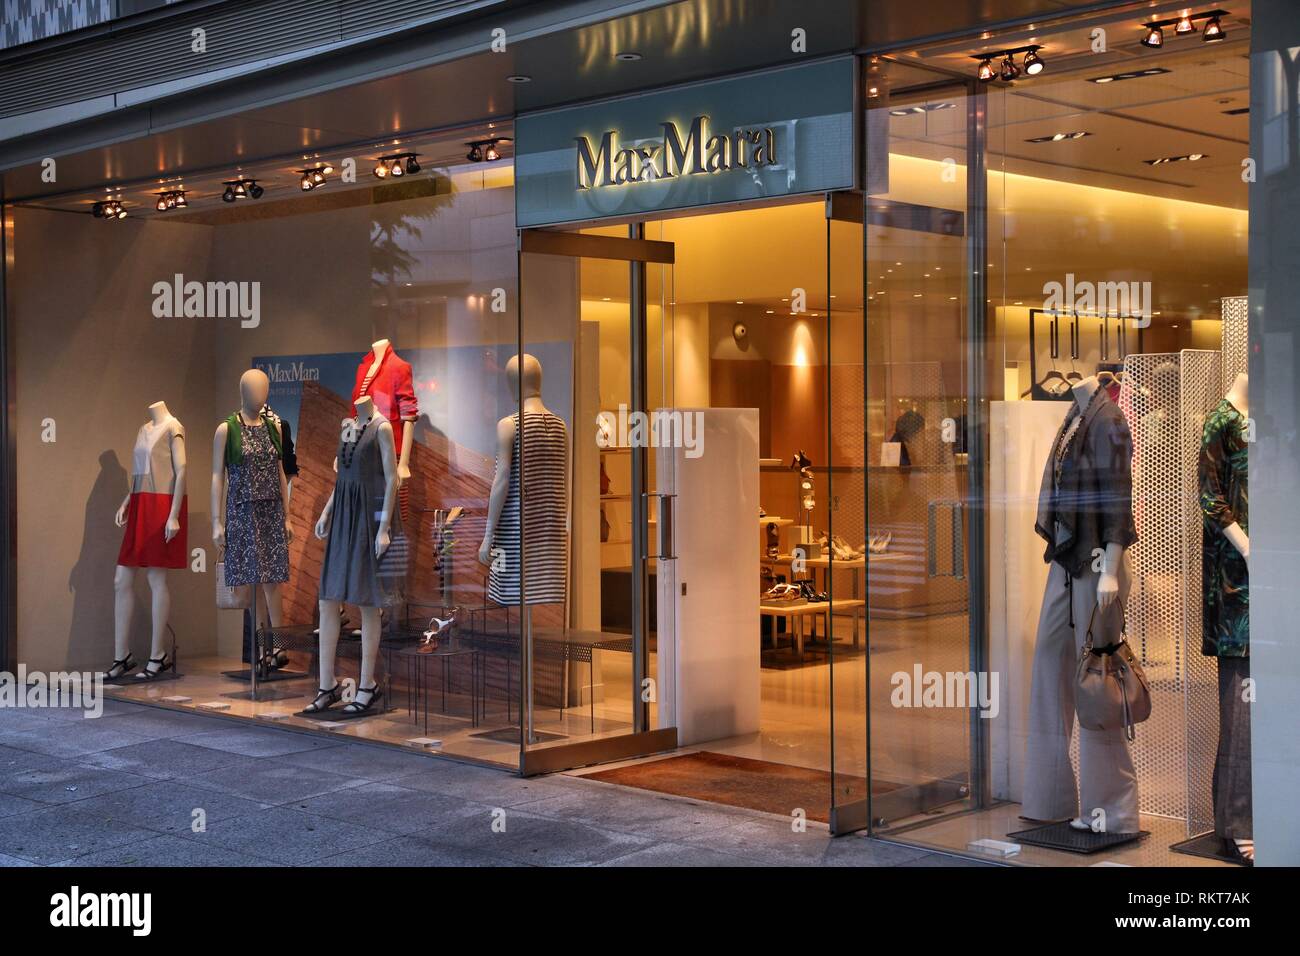 NAGOYA, GIAPPONE - 3 maggio: MaxMara fashion store il 3 maggio 2012 a Nagoya, Giappone. Gruppo Max Mara , ha 2254 memorizza e 1,2 mld di euro di fatturato (2008). Foto Stock